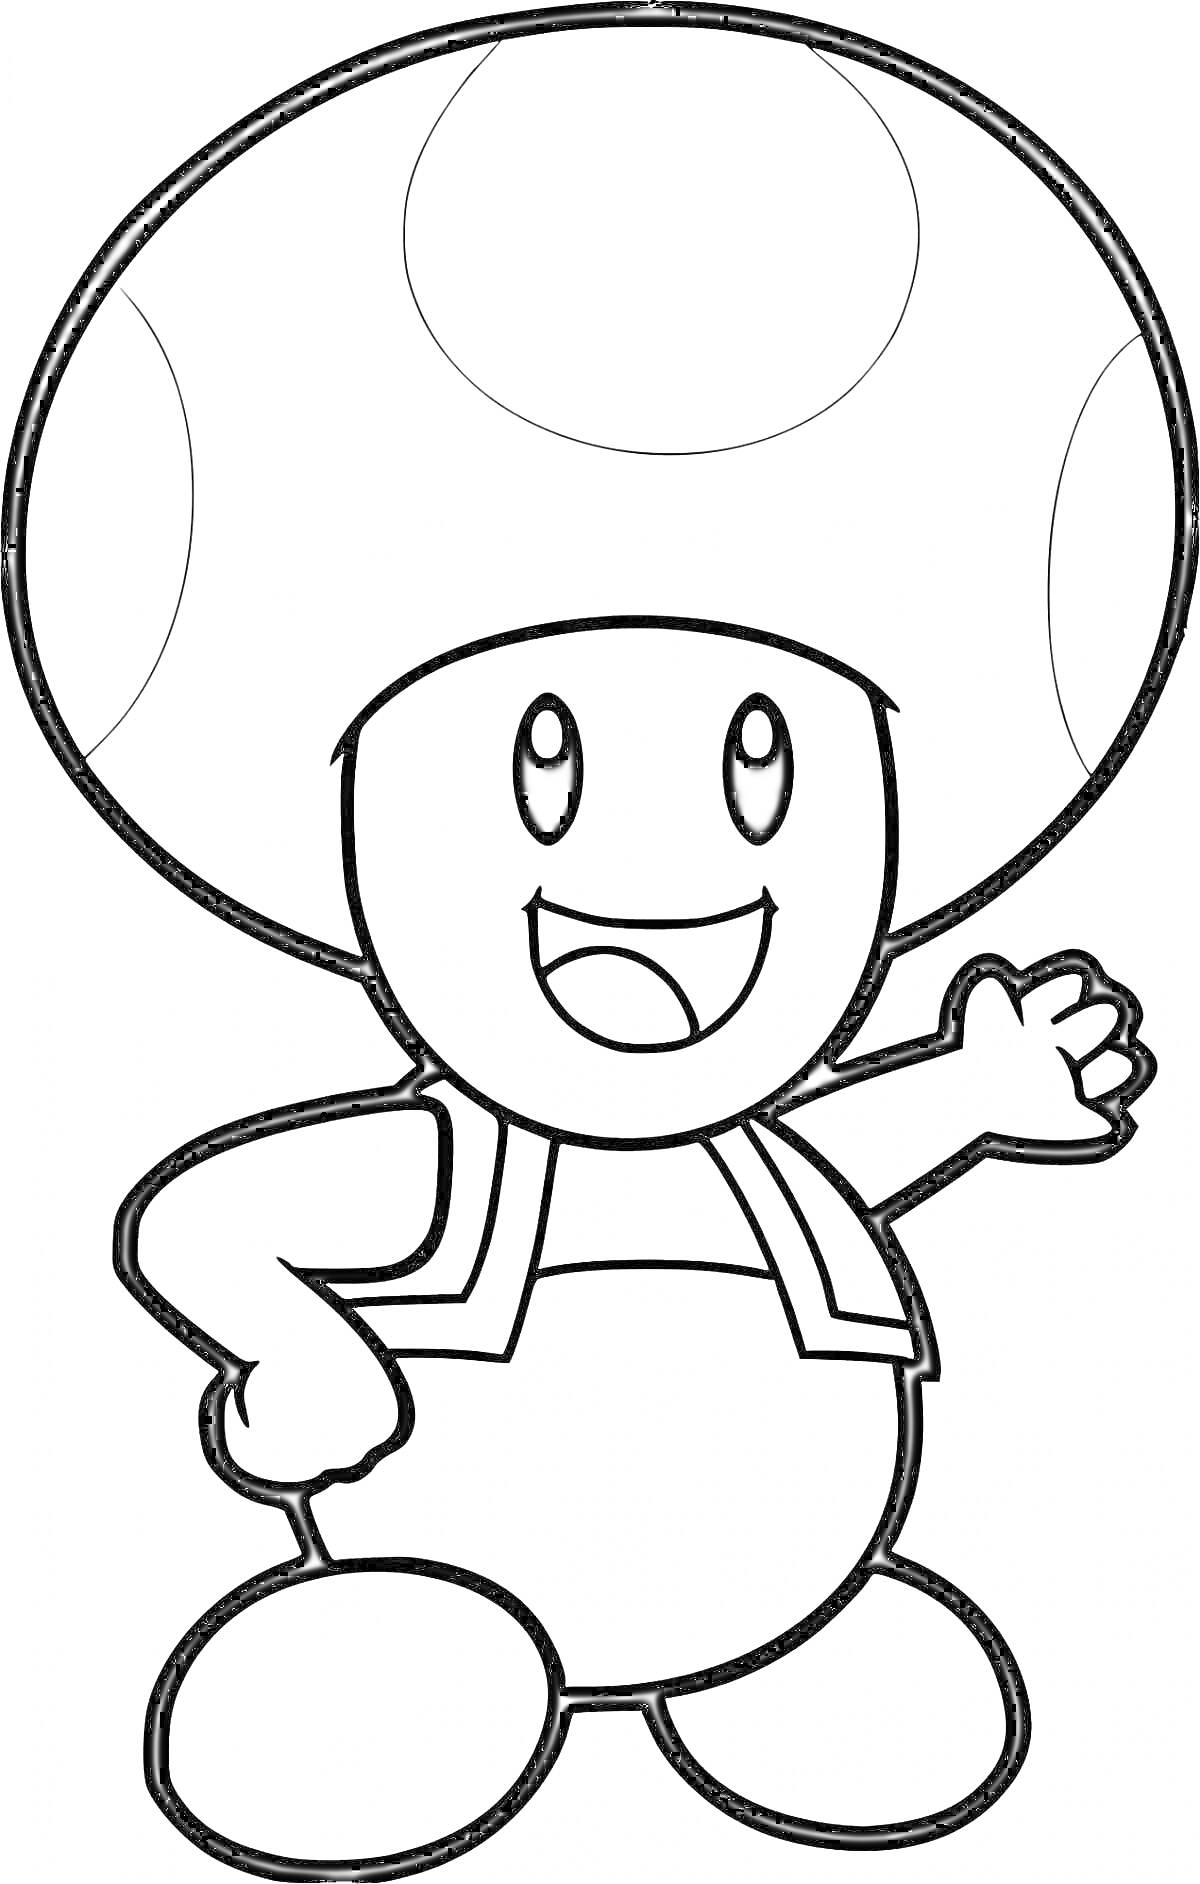 Раскраска гриб Марио с улыбкой, машет рукой